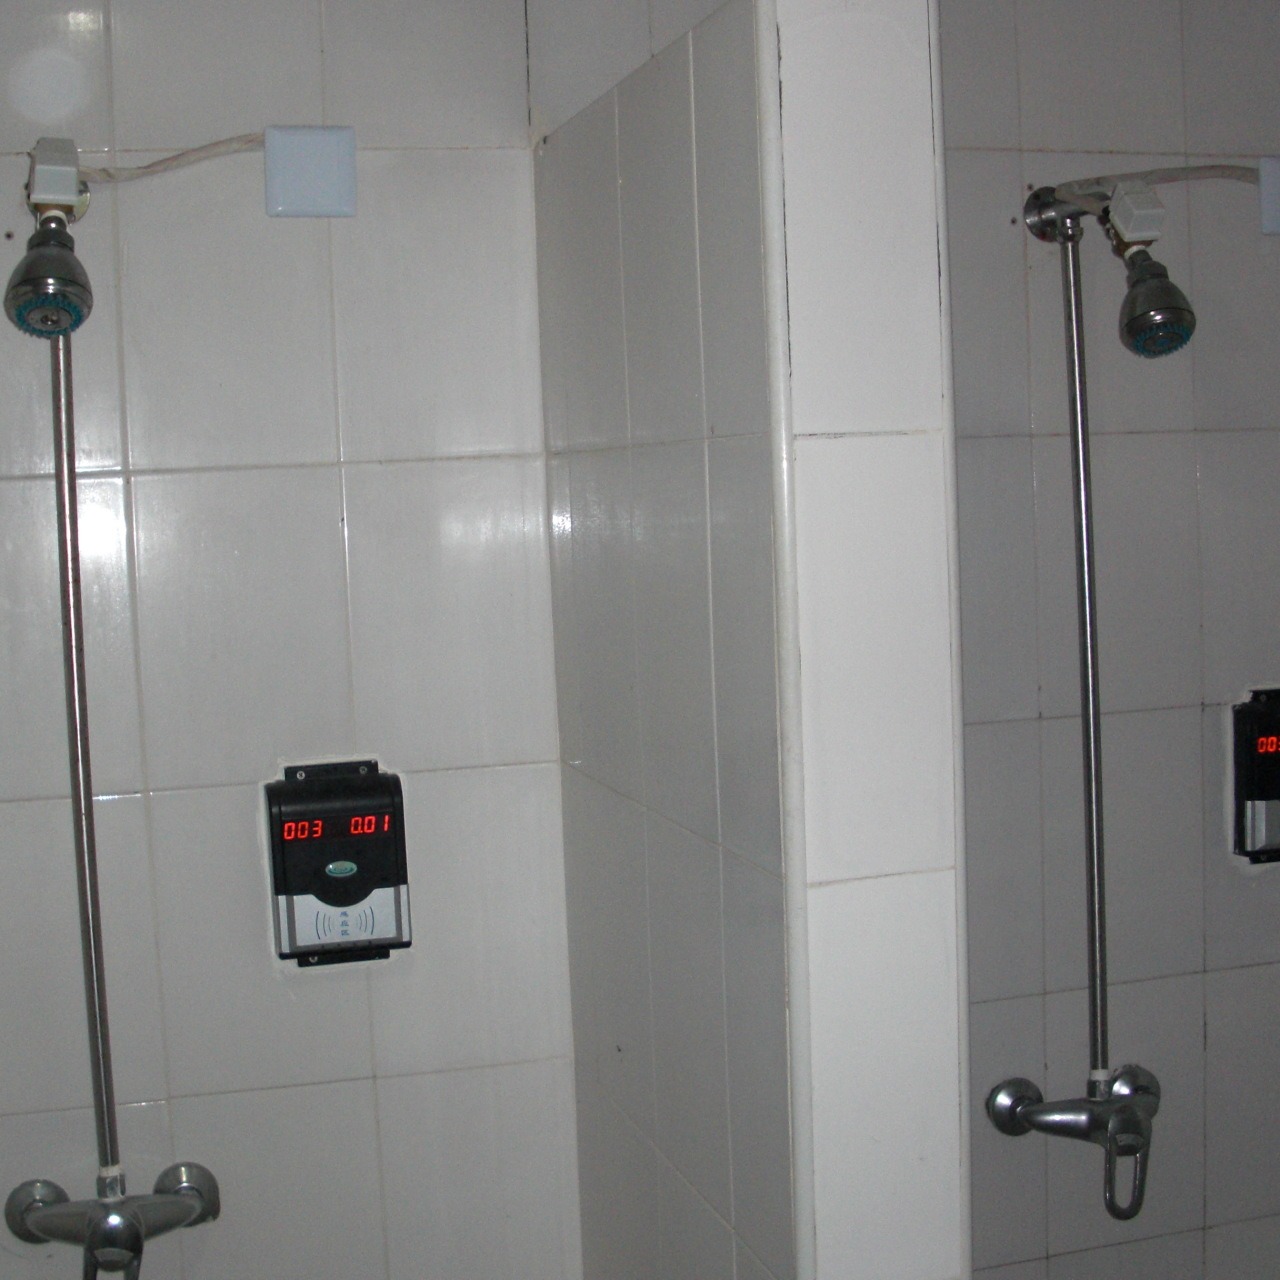 淋浴刷卡机 IC卡节水计费系统 浴室淋浴水控器